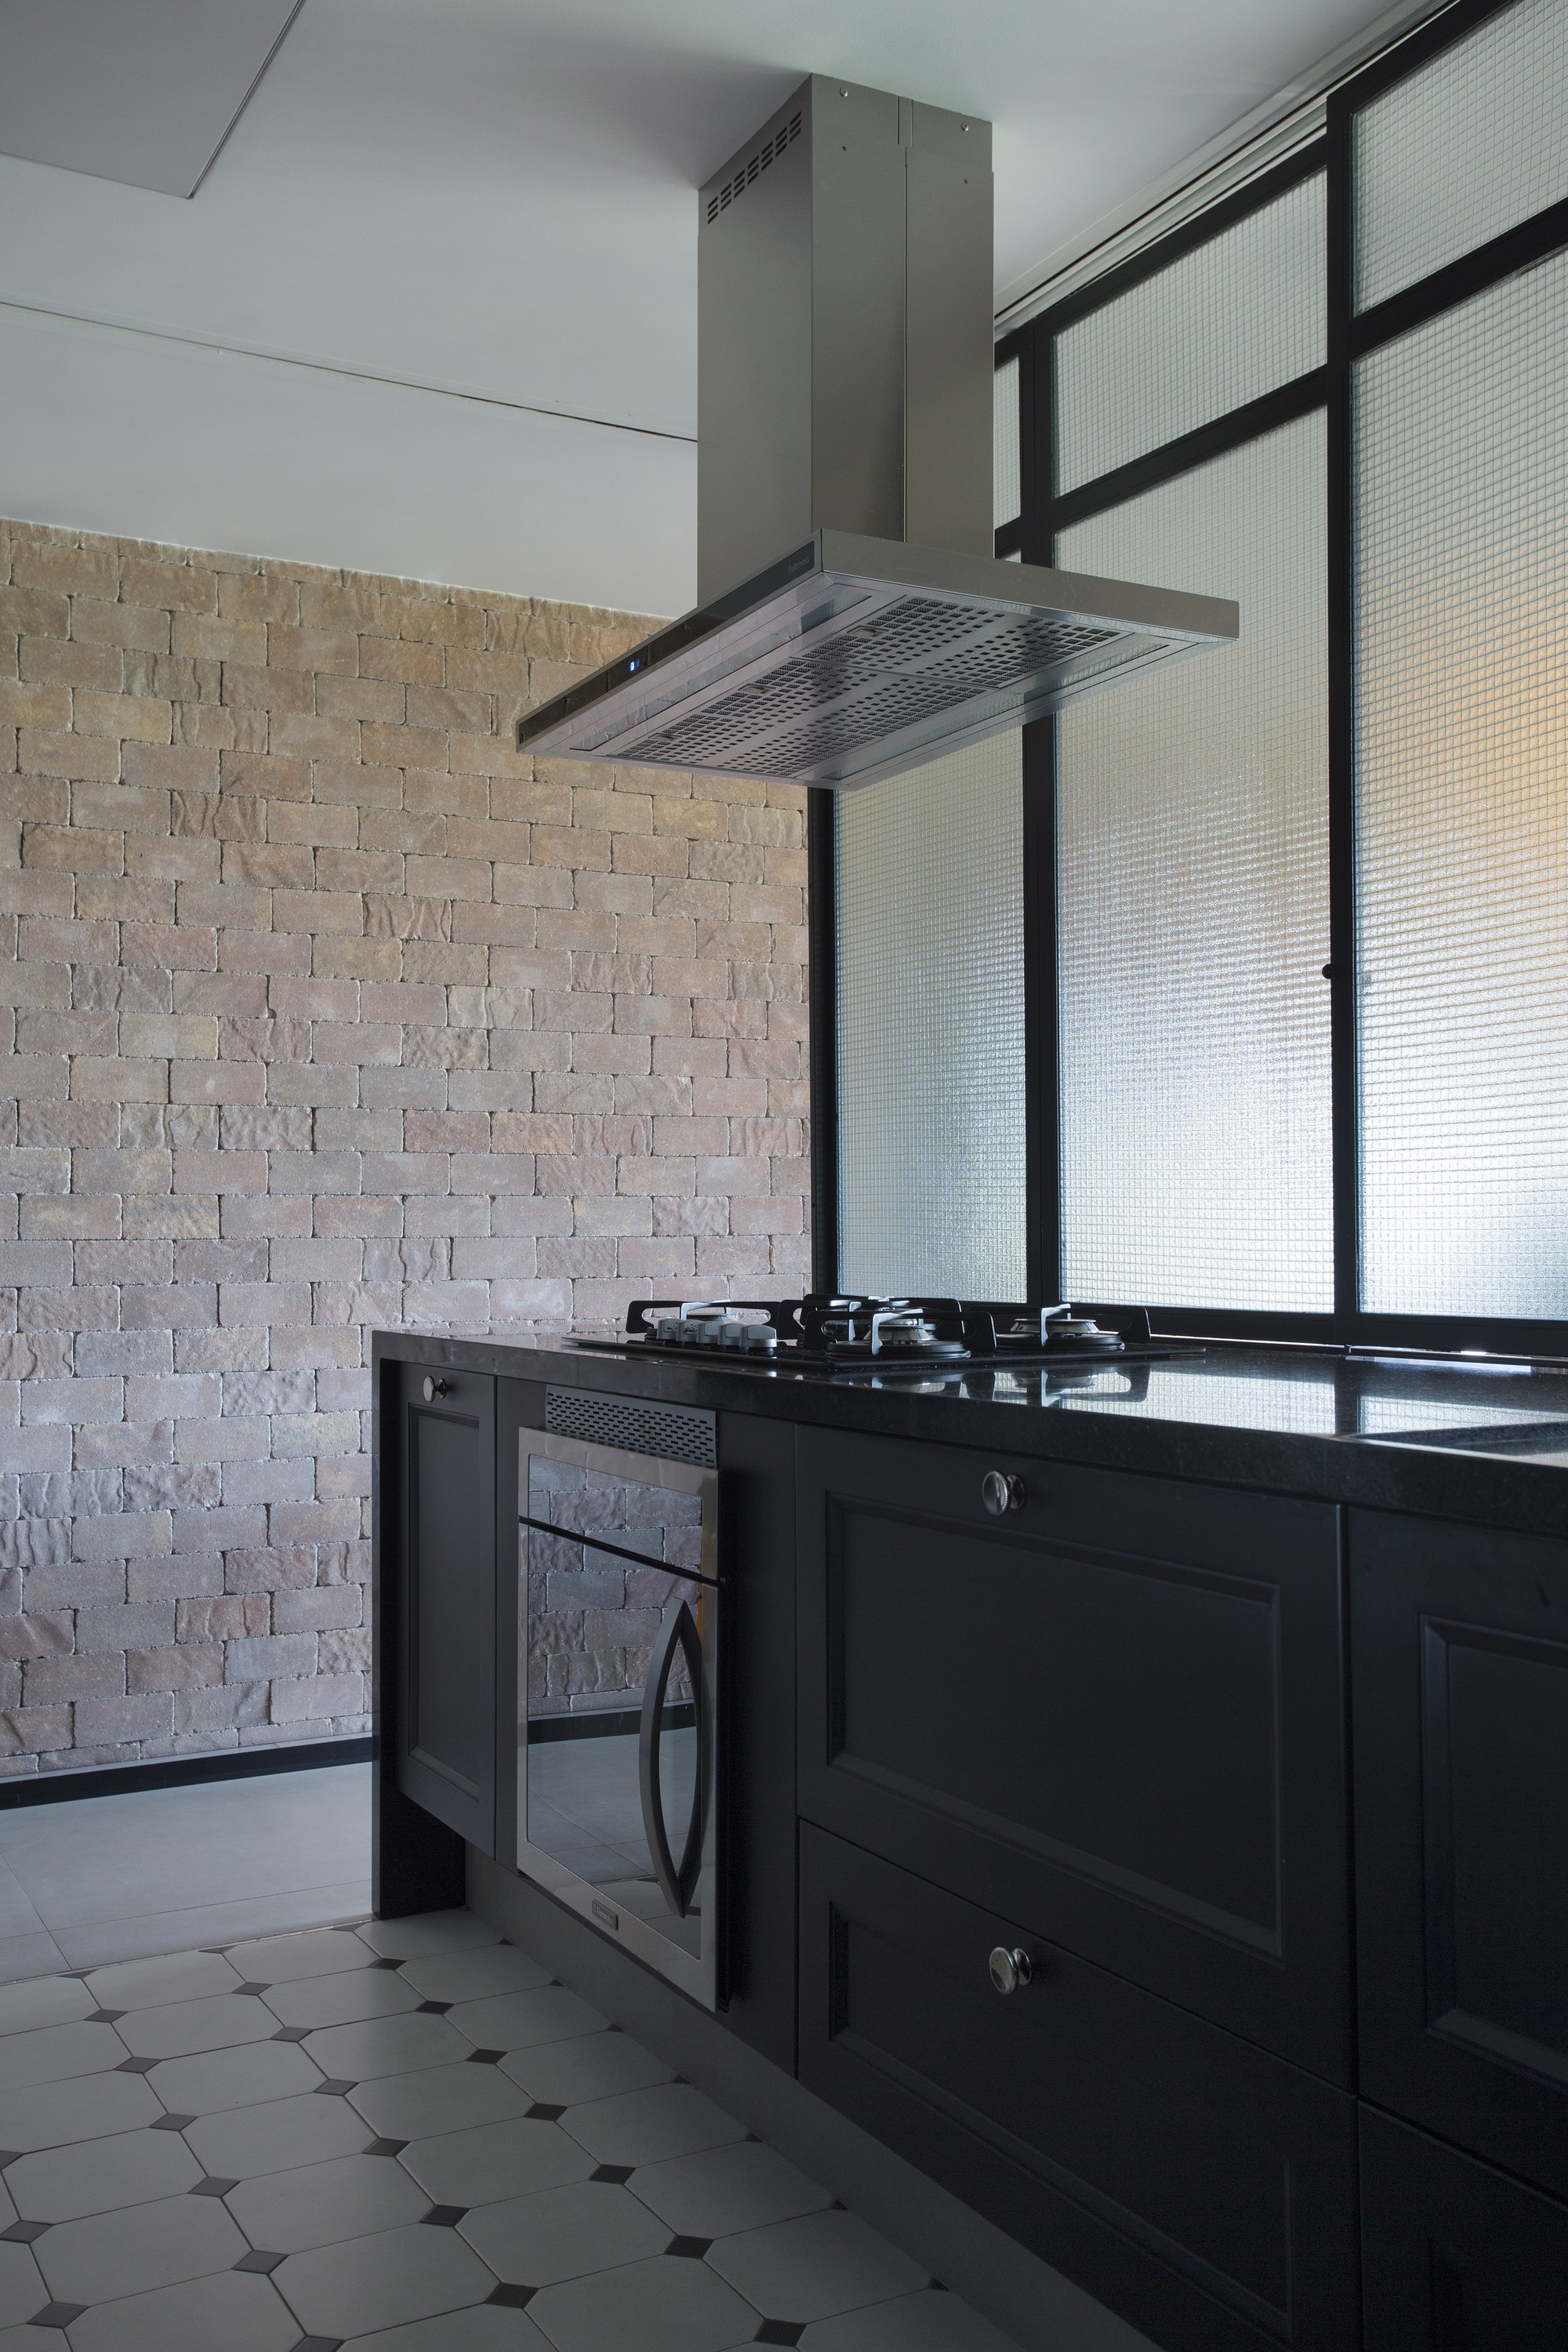 Décor do dia: cozinha preta com armário provençal e porta de correr (Foto: Denilson Machado/MCA Estúdio)